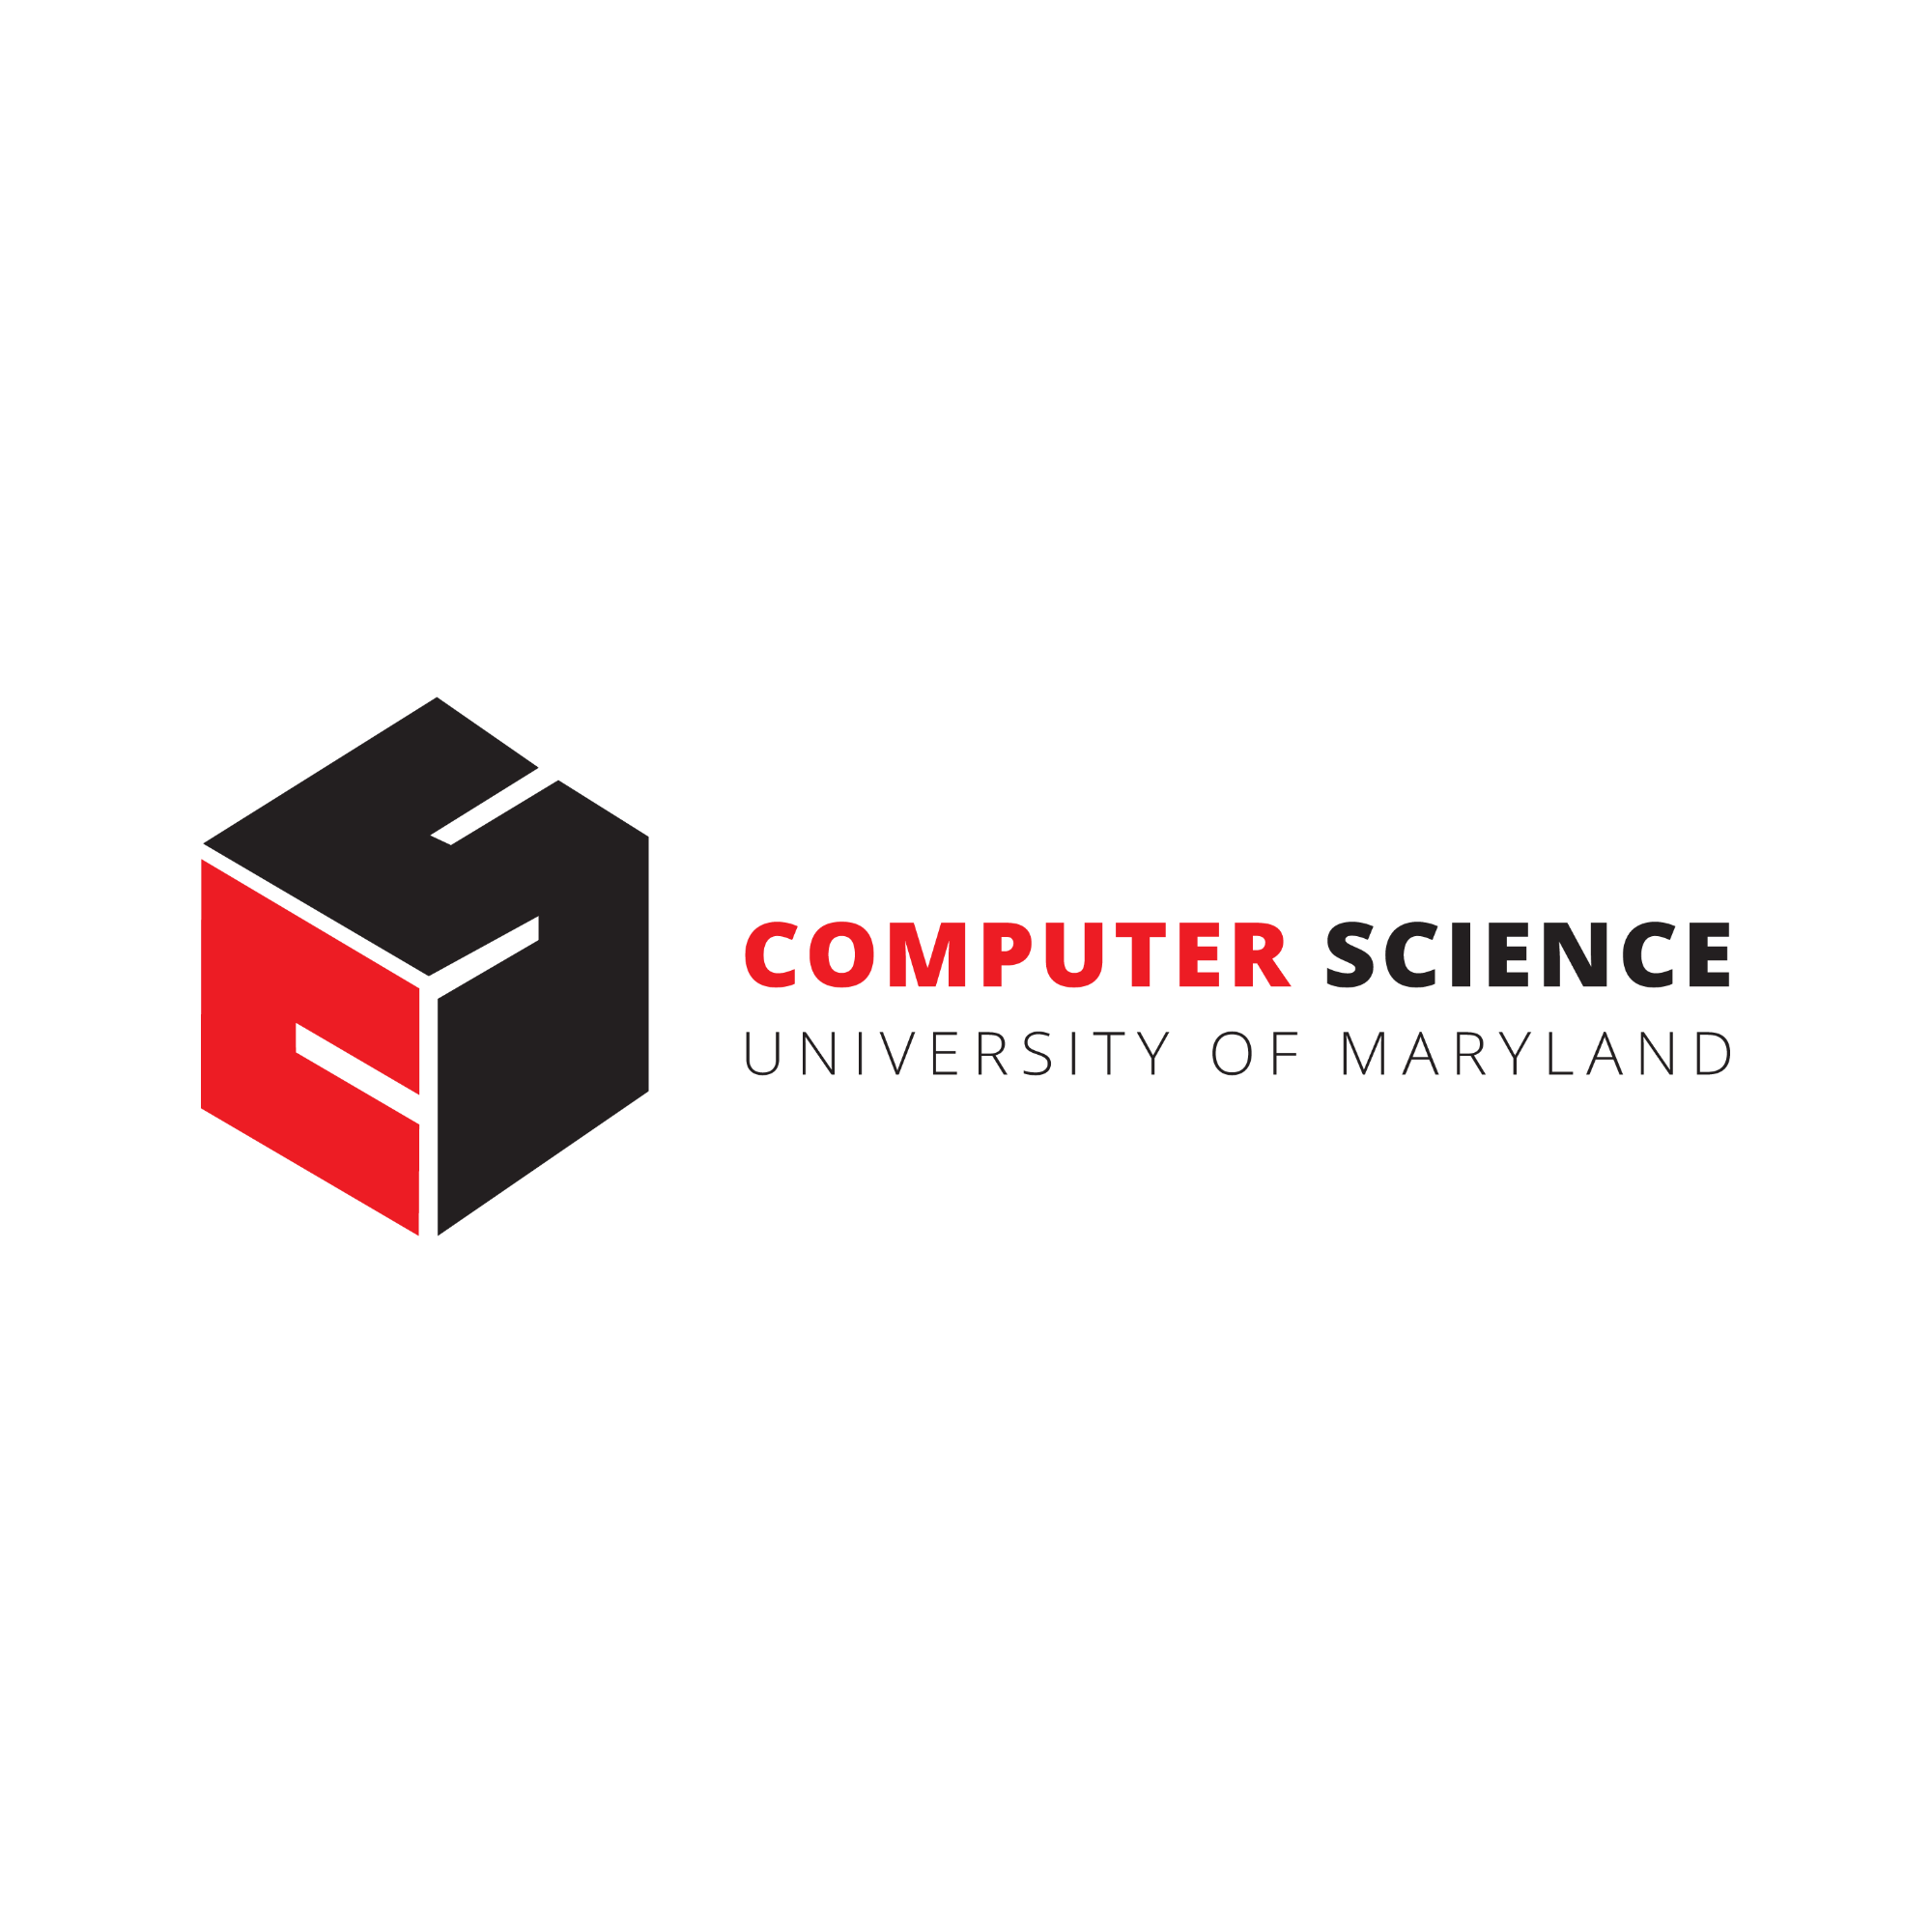 UMD Computer Science Department logo